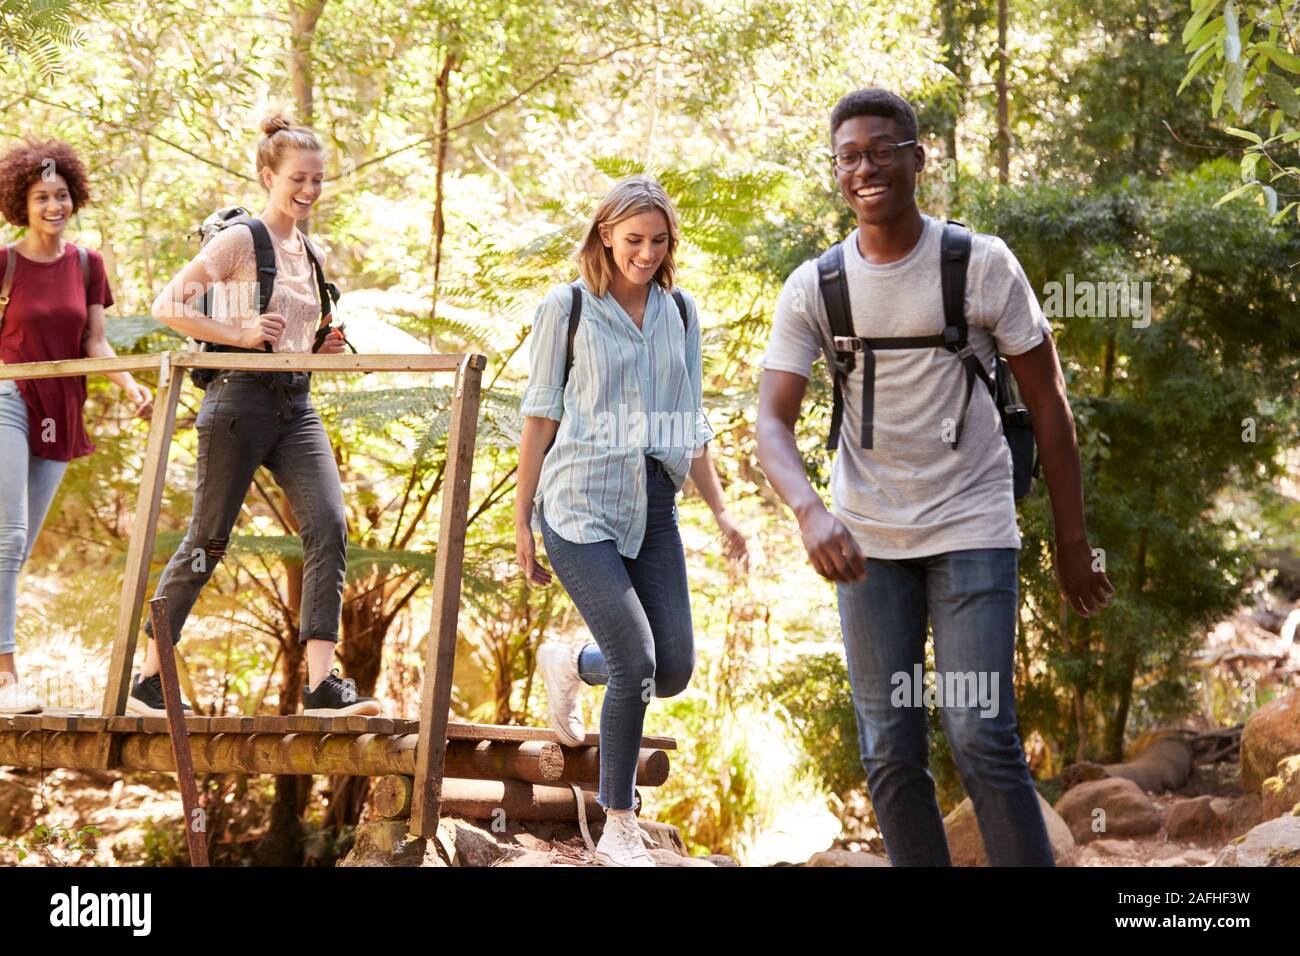 Adultos jóvenes amigos cruzando un puente peatonal durante una caminata en el bosque, longitud completa Foto de stock